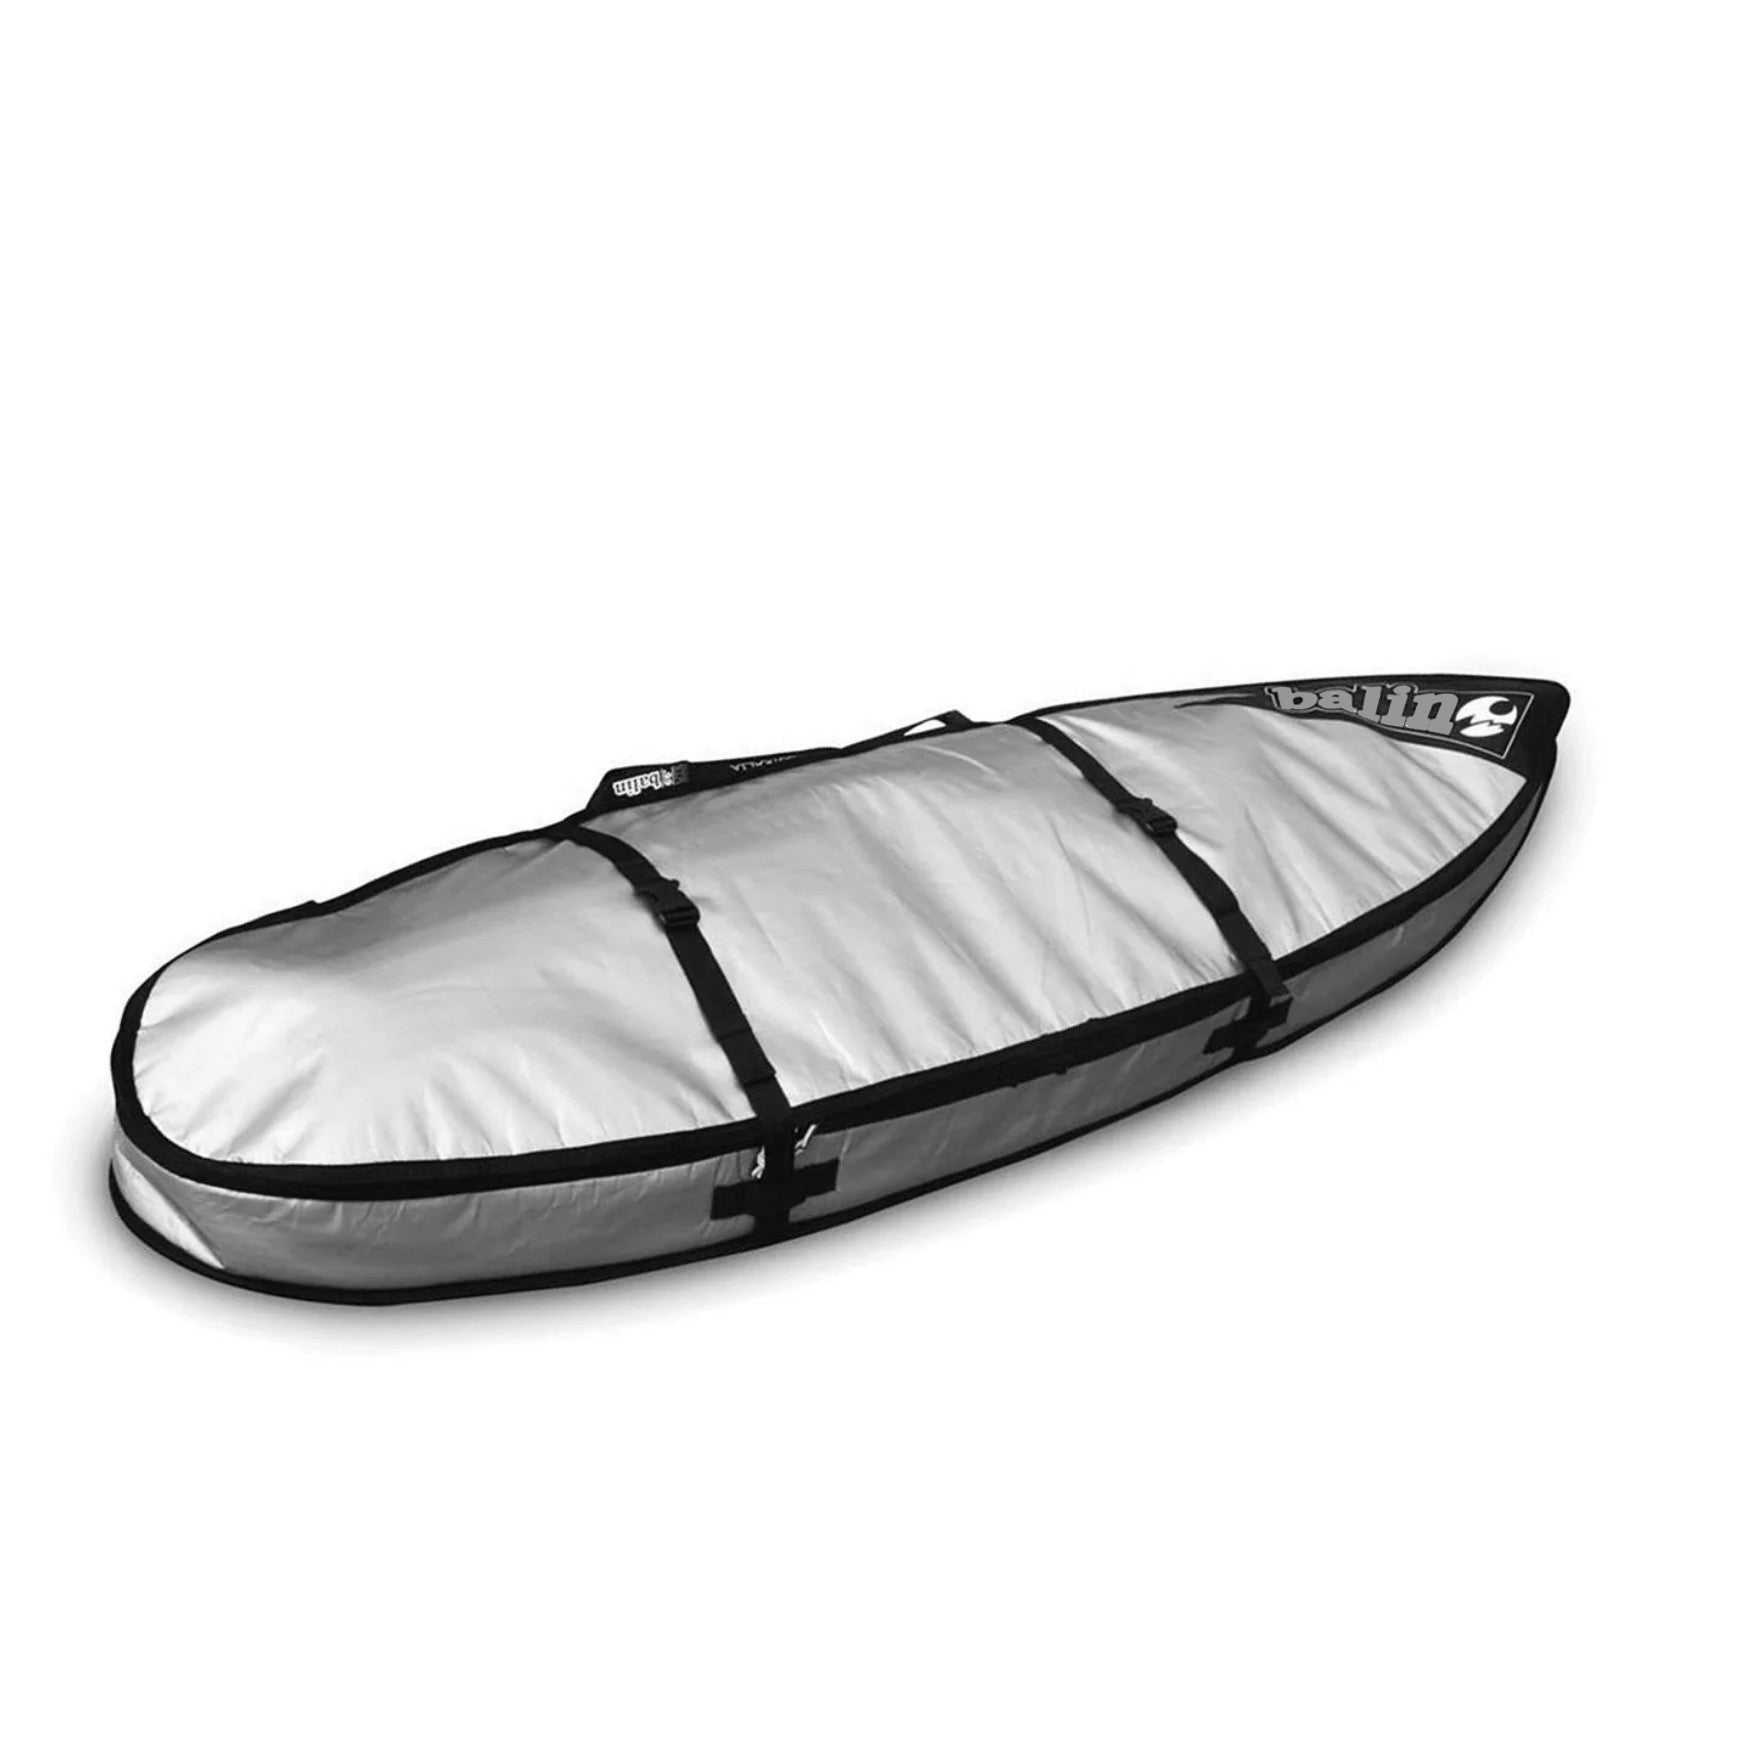 BALIN - Double housse de surf 2 planches - UTE - Shortboard 10mm - Grey